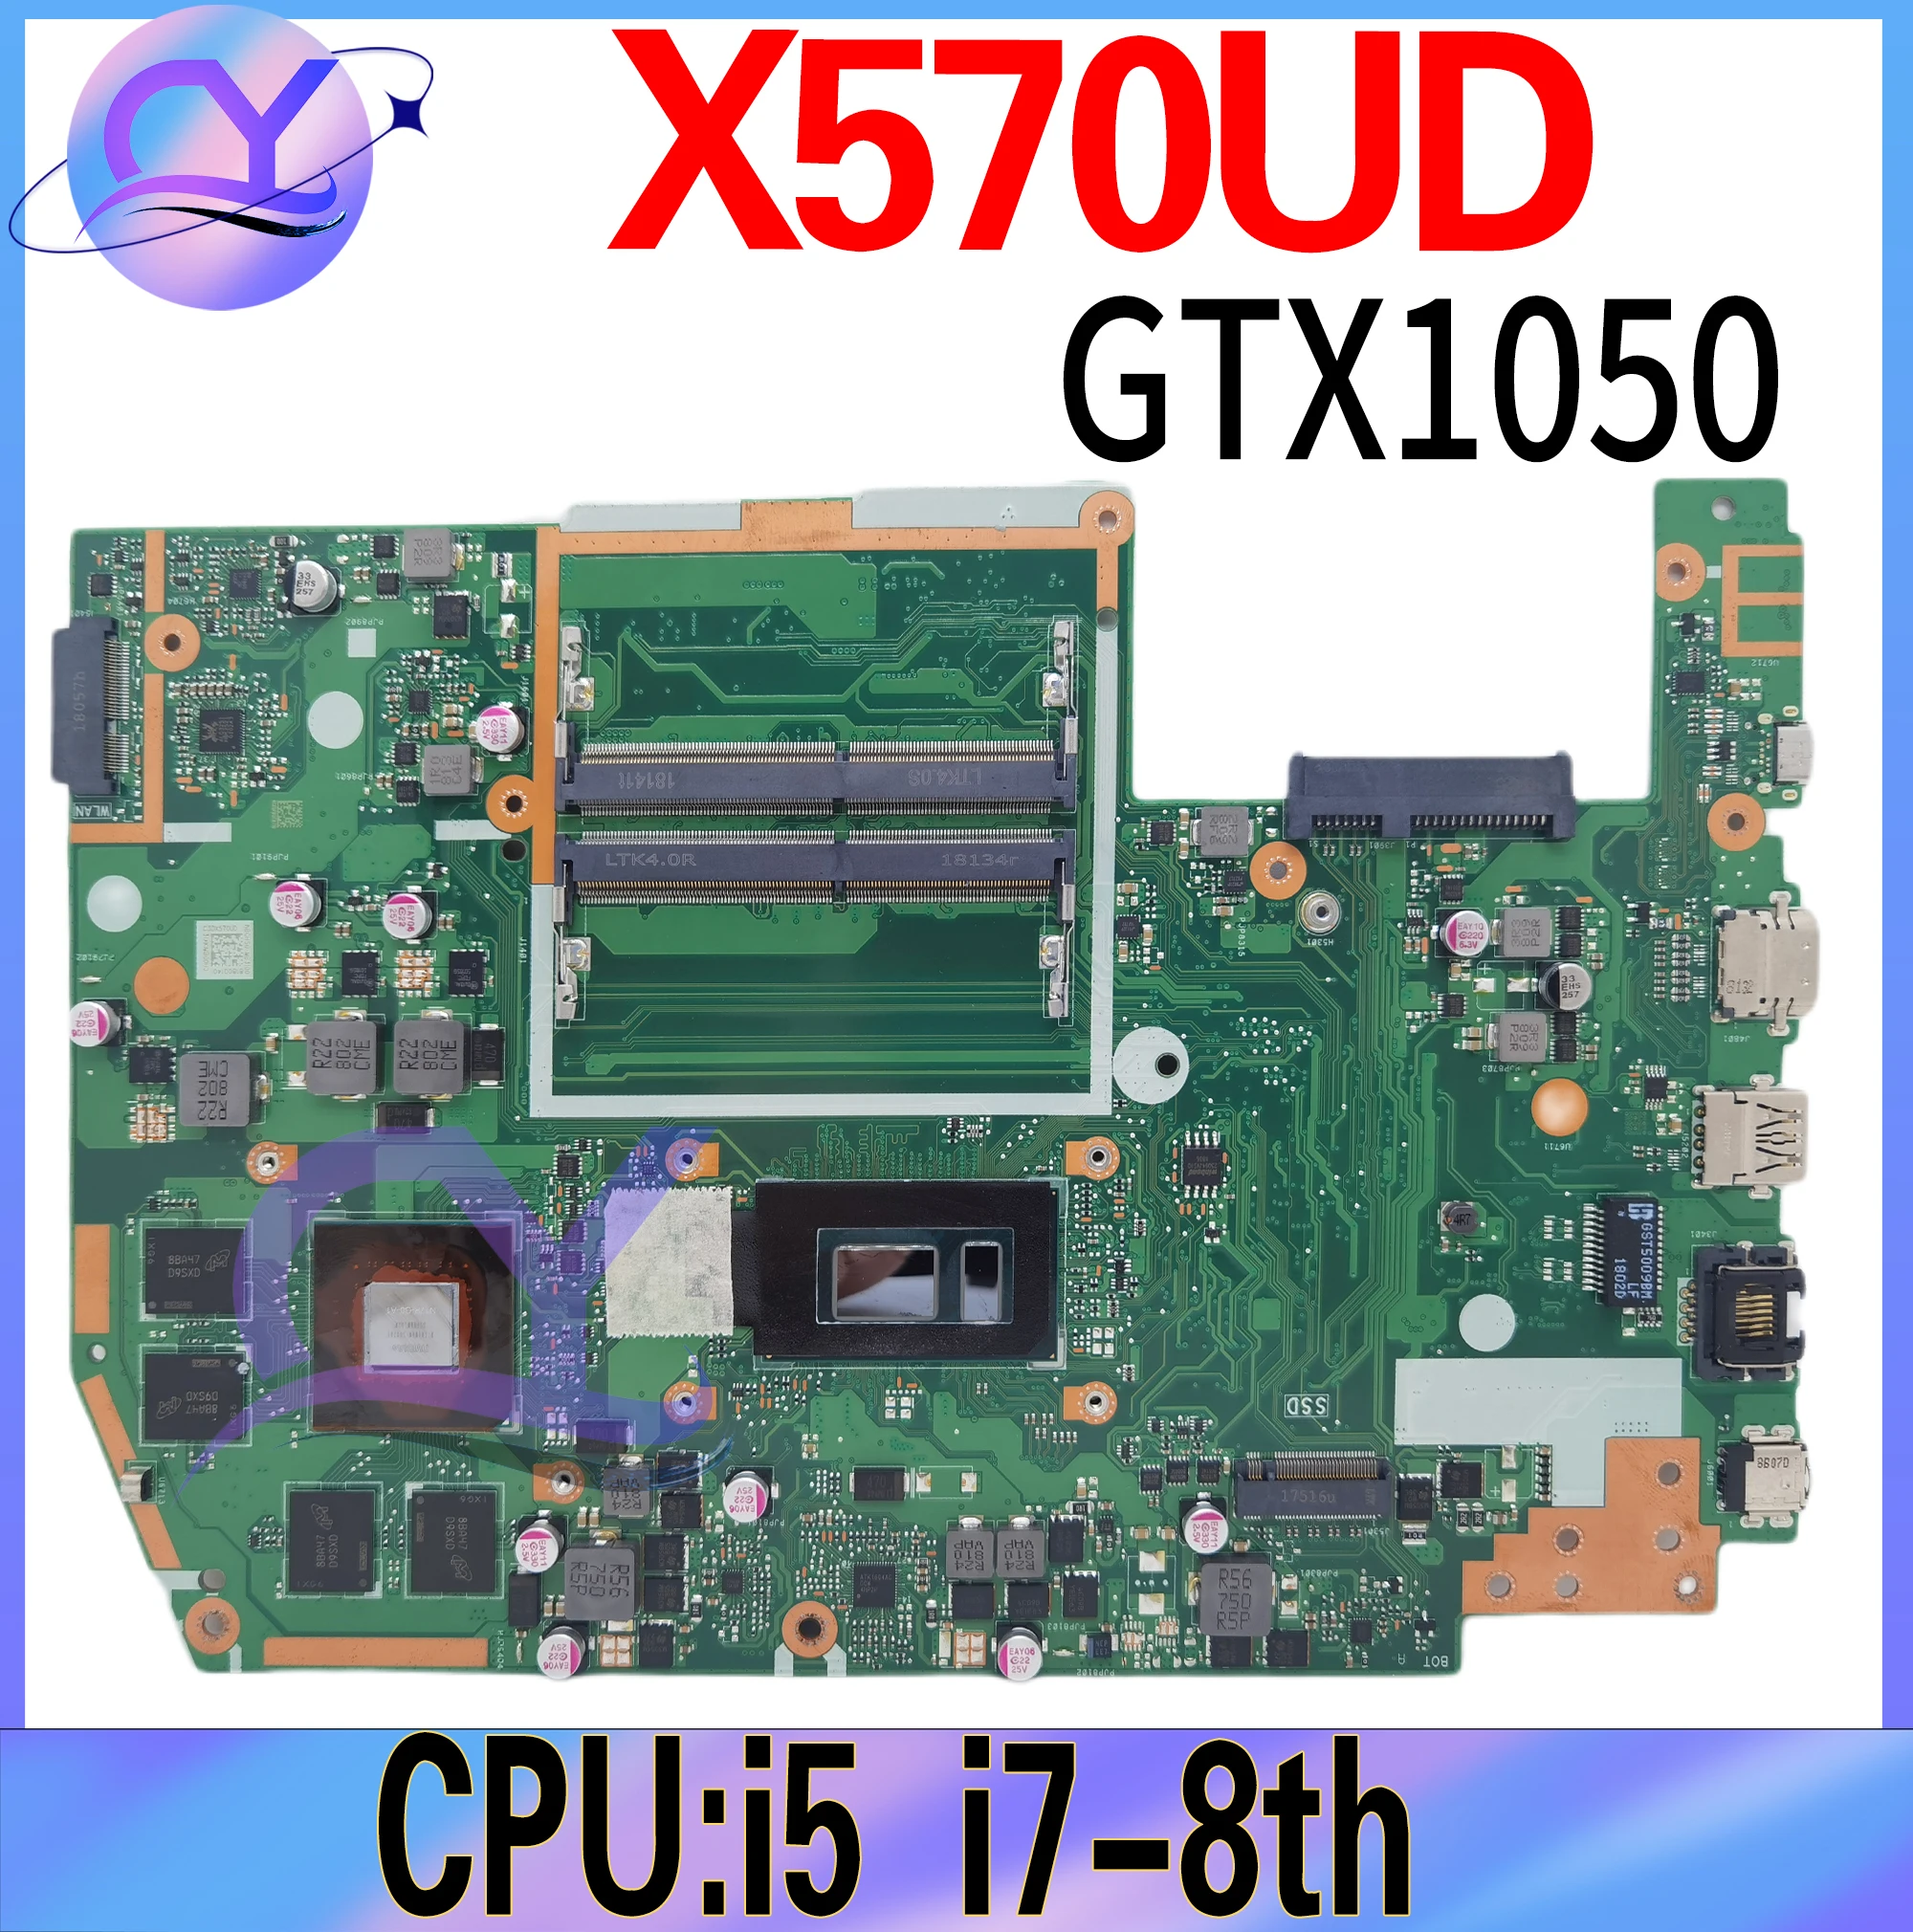 

X570UD Notebook Mainboard For ASUS TUF YX570U YX570UD X570U FX570U FX570UD Laptop Motherboard I5 I7-8th GTX1050 100%Working